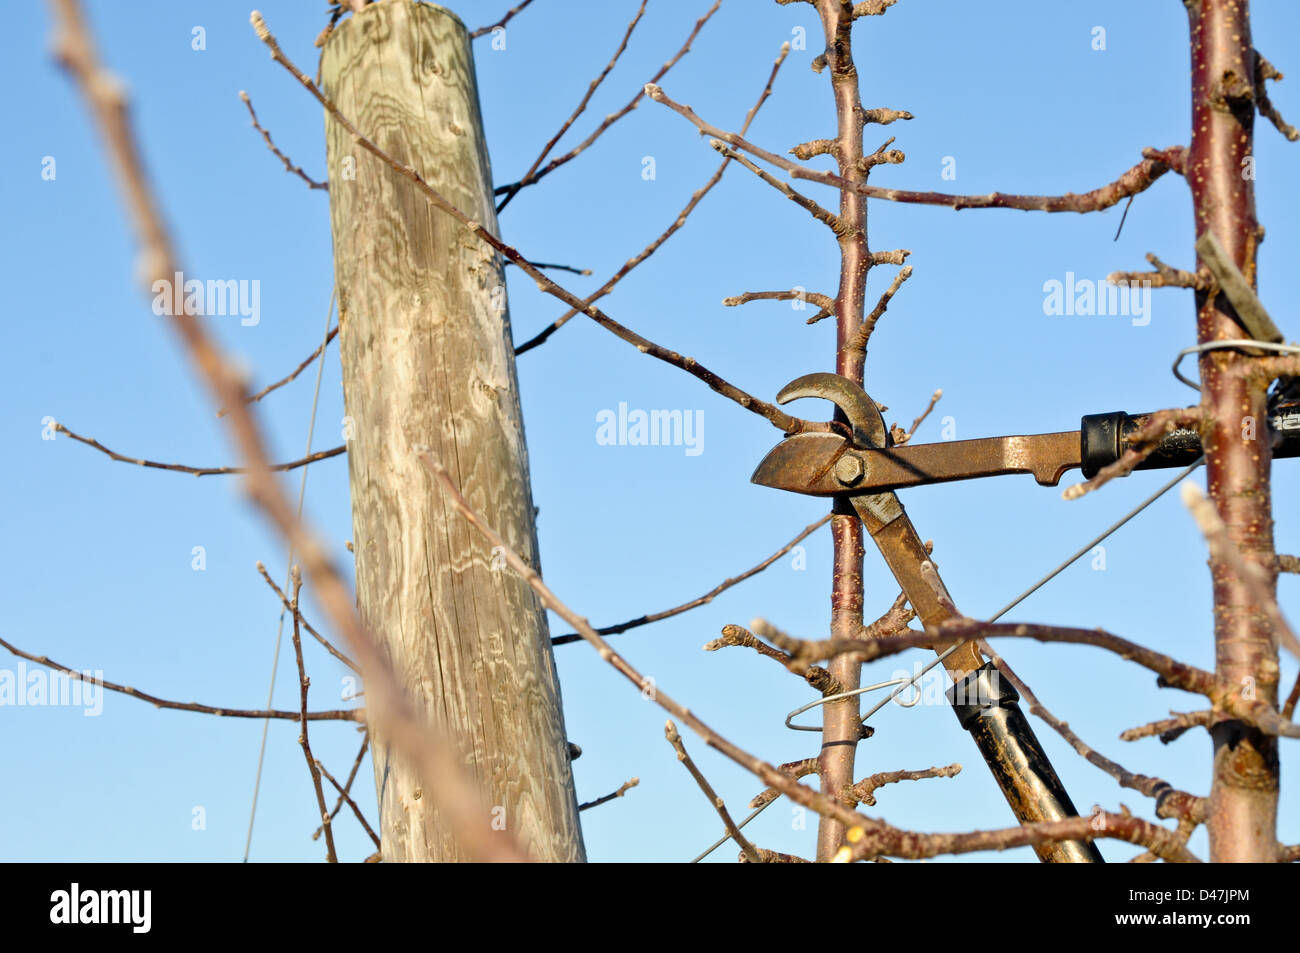 Mandrino alto albero della mela con il filo guida orchard in inverno pronto per punning, Upstate New York Foto Stock